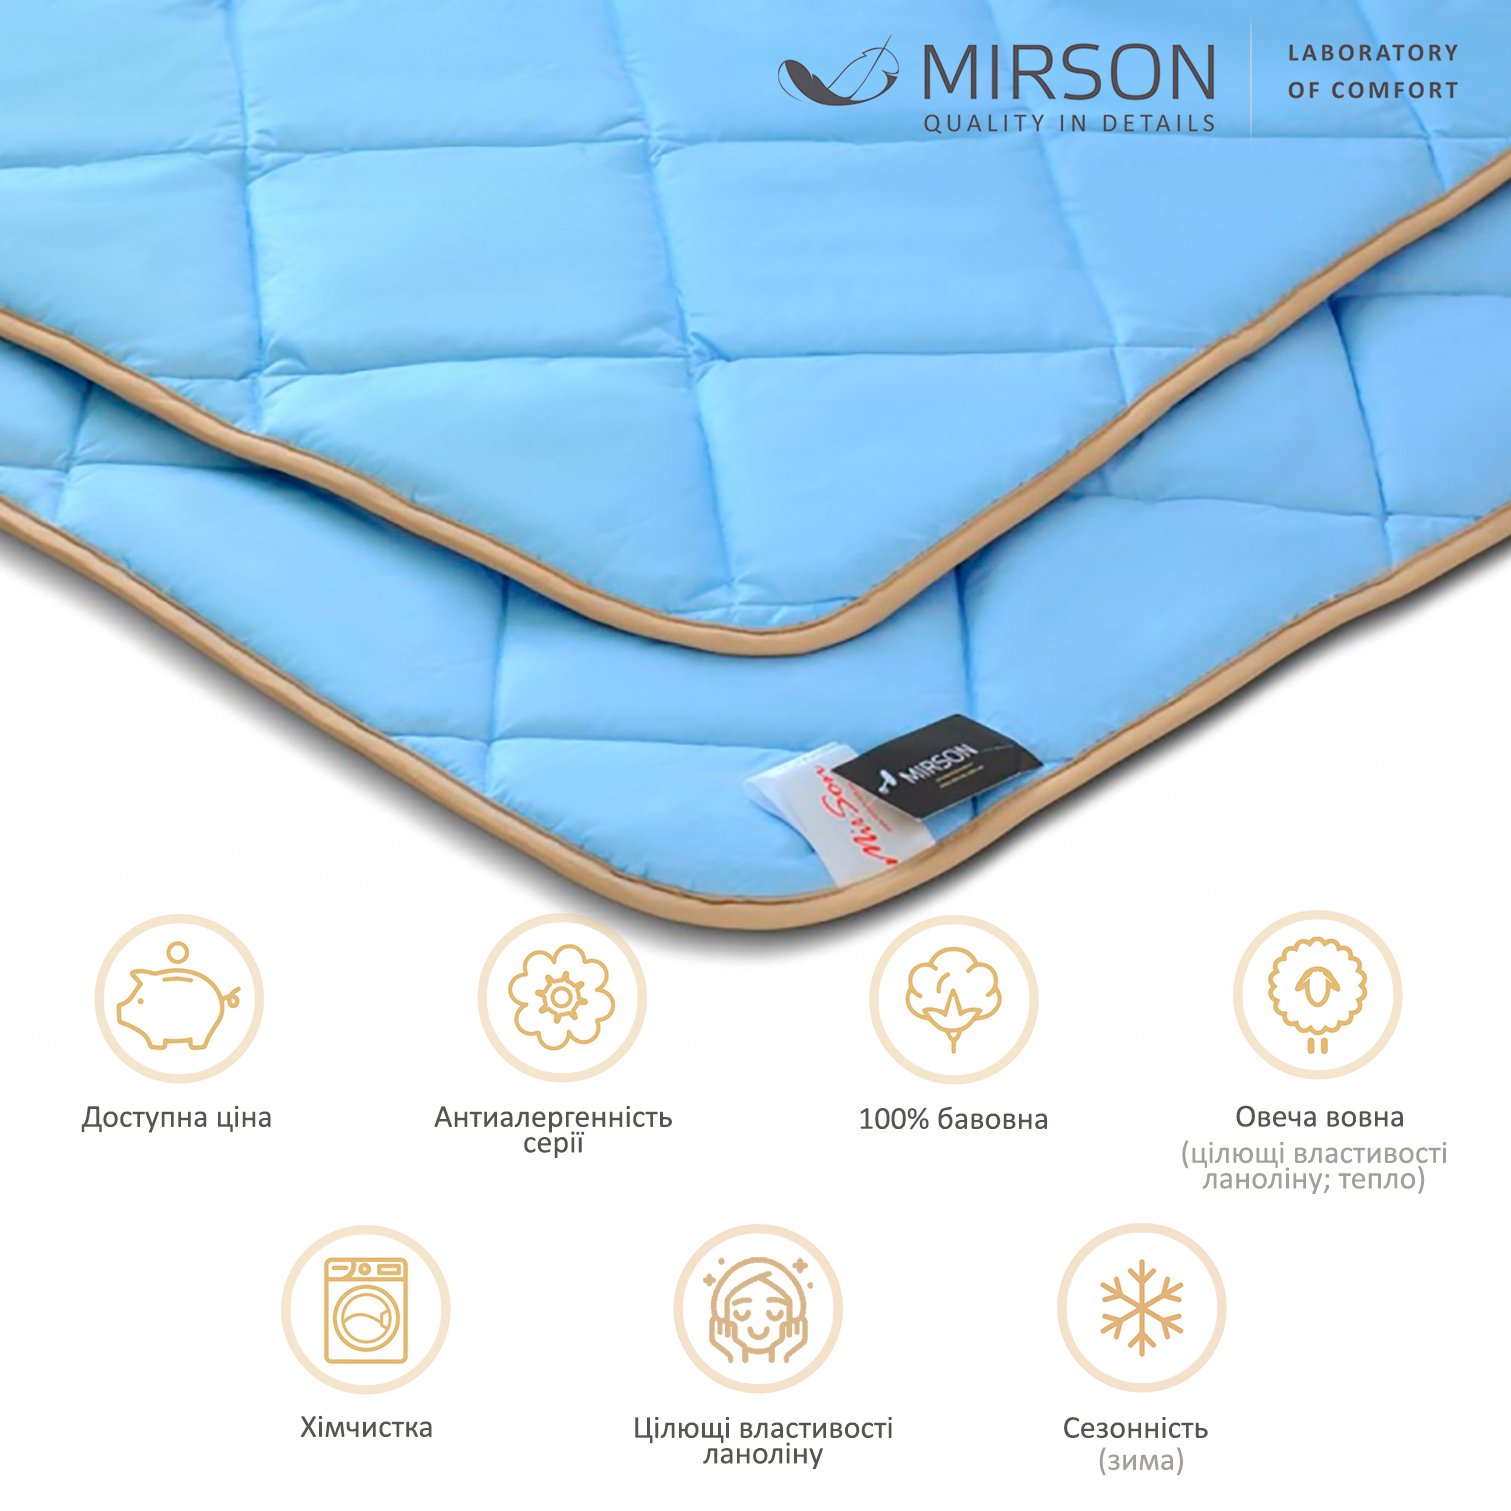 Одеяло шерстяное MirSon Valentino №0338, зимнее, 110x140 см, голубое - фото 5